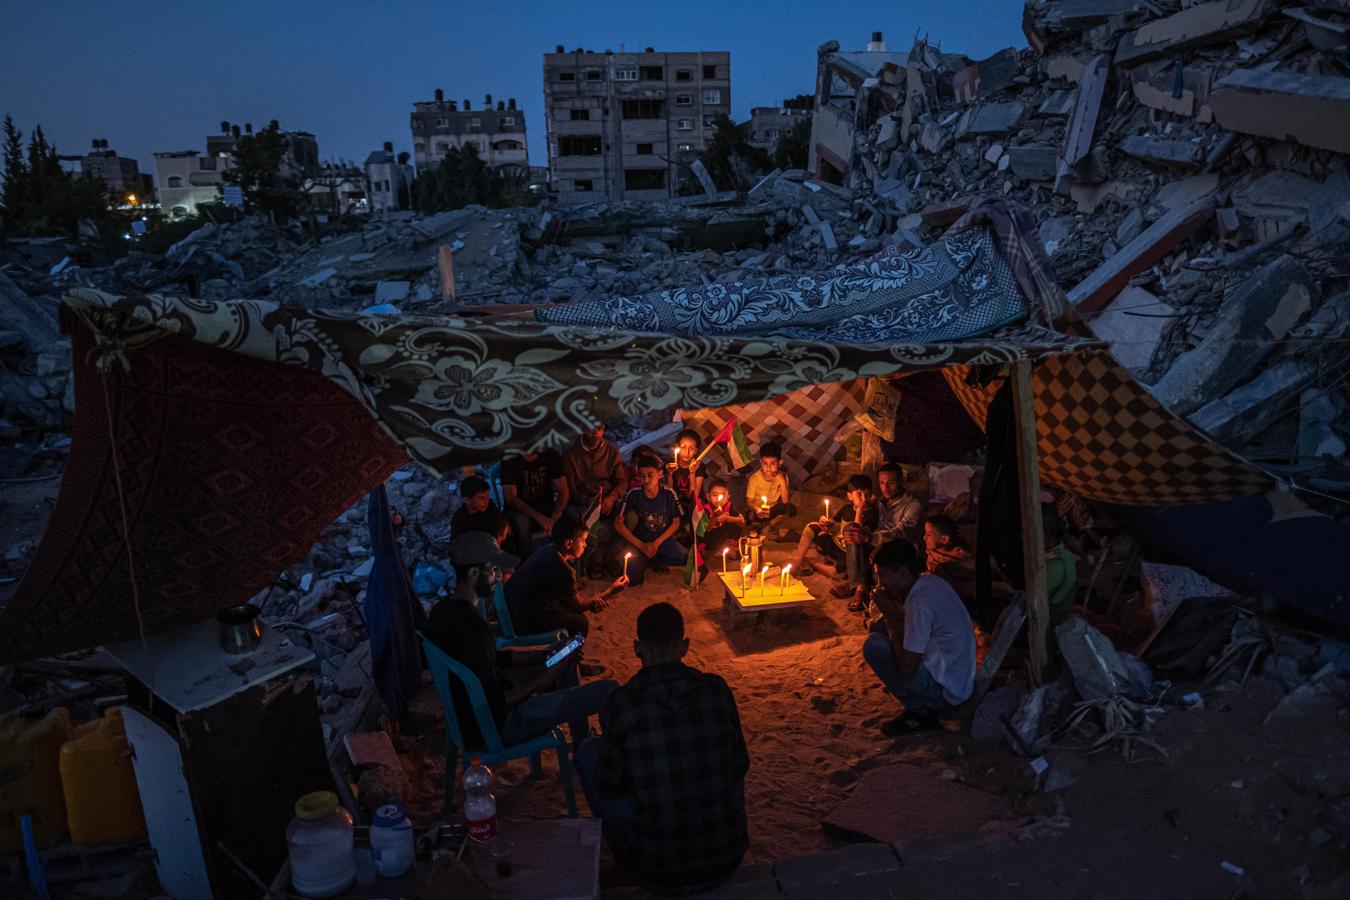 Niños palestinos en Gaza. Niños palestinos se reúnen con velas durante un frágil alto el fuego en Beit Lahia, Gaza, Palestina, el 25 de mayo de 2021, tras una protesta de los niños del barrio contra los ataques a Gaza. El conflicto, que duró 11 días, estalló el 10 de mayo, a raíz de las crecientes tensiones. Se dispararon cohetes a través de las fronteras con Siria y Líbano, en lo que se convirtió en el brote más intenso de enfrentamientos desde la Guerra de Gaza de 2014. UNICEF declaró que unos 500.000 niños de Gaza podrían necesitar apoyo psicológico.